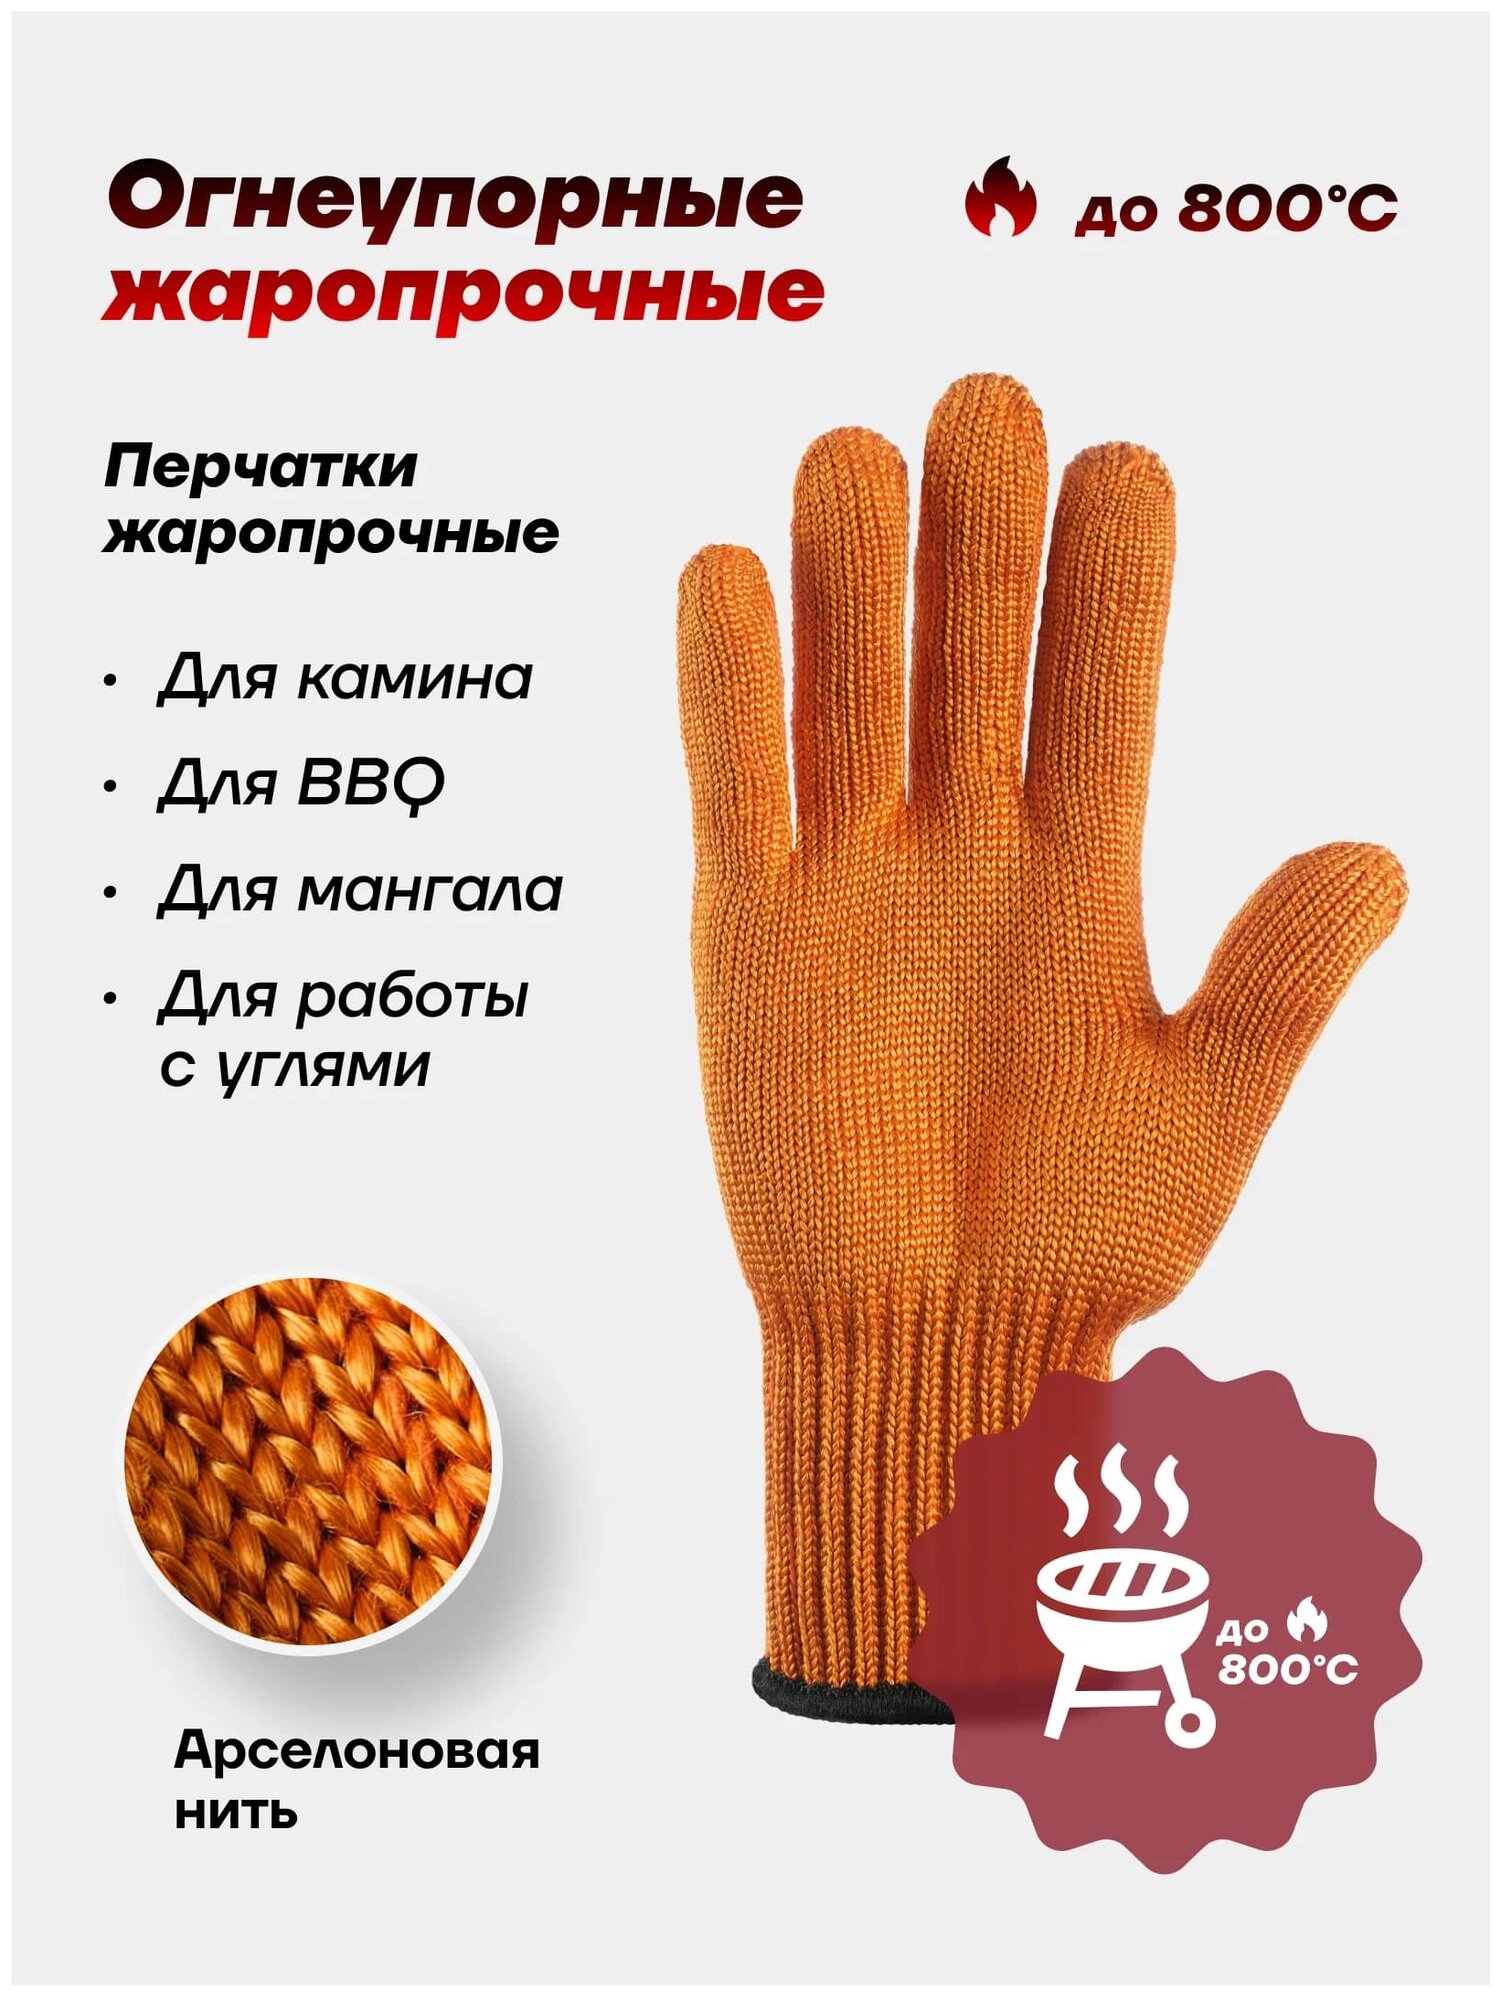 Жаропрочные перчатки арселоновые, огнеупорные перчатки, 1 пара